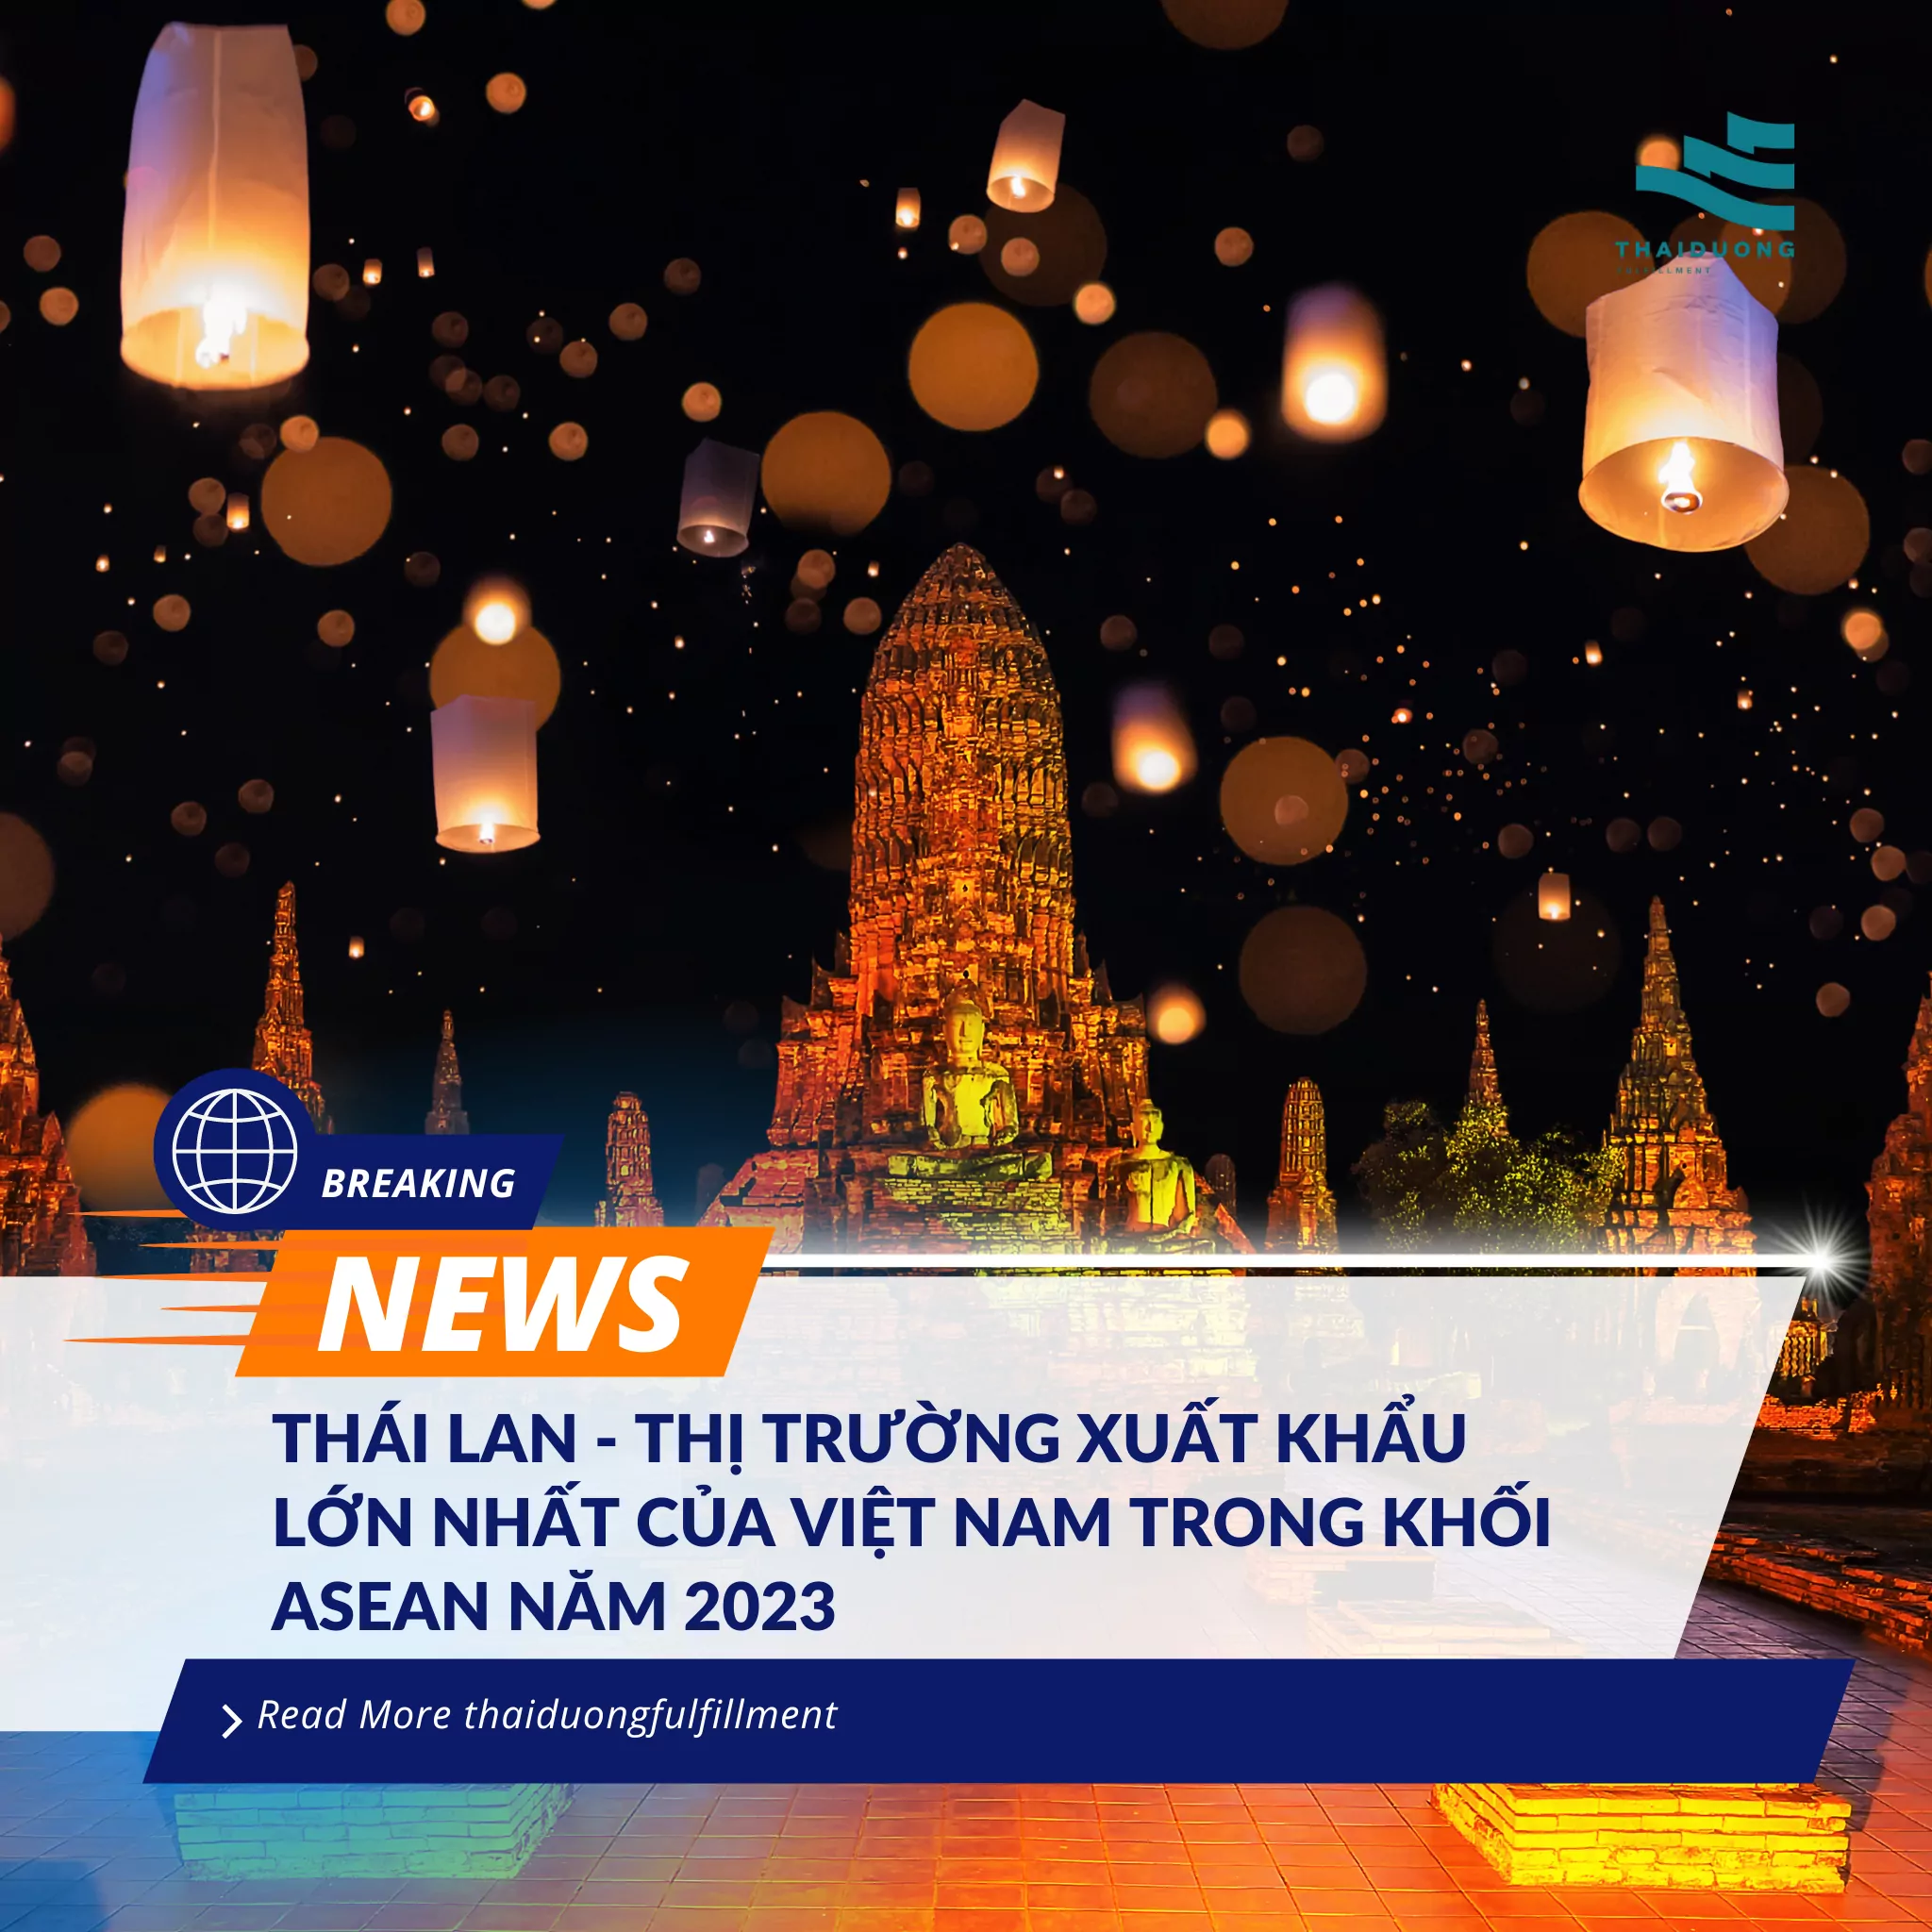 Thái Lan - thị trường xuất khẩu lớn nhất của Việt Nam trong khối ASEAN năm 2023